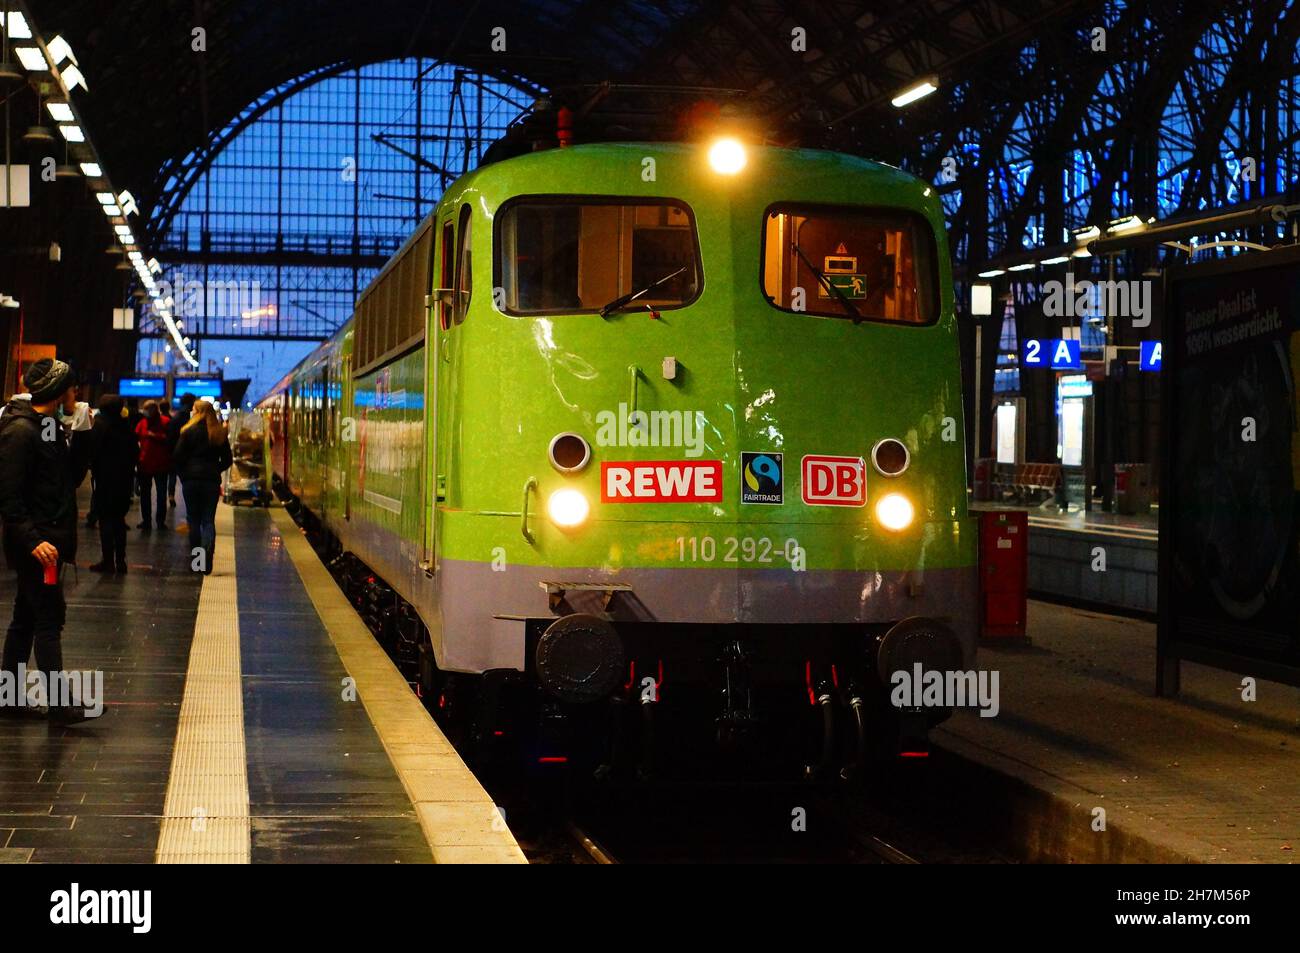 FRANCOFORTE, GERMANIA - 06 novembre 2021: La nuova idea di un treno supermarket è presentata alla stazione centrale di Francoforte. Offrirà un servizio regionale e sostenibile Foto Stock